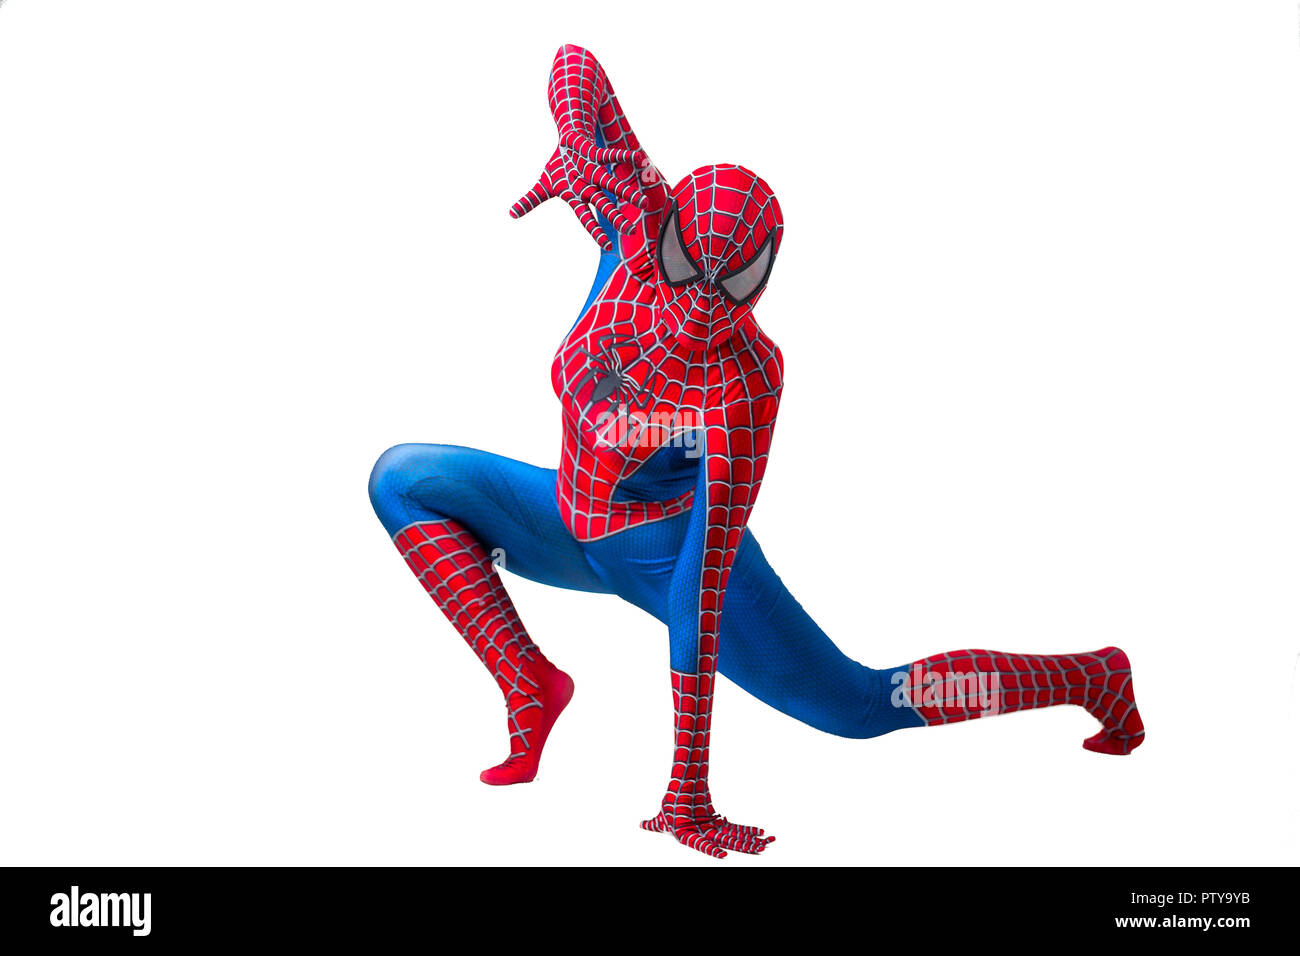 Central, Hong Kong - 19 August 2018: ein Mann cosplaying der berühmten Marvel Comic Charakter - Spiderman und posieren, um Fotos zu machen. Stockfoto